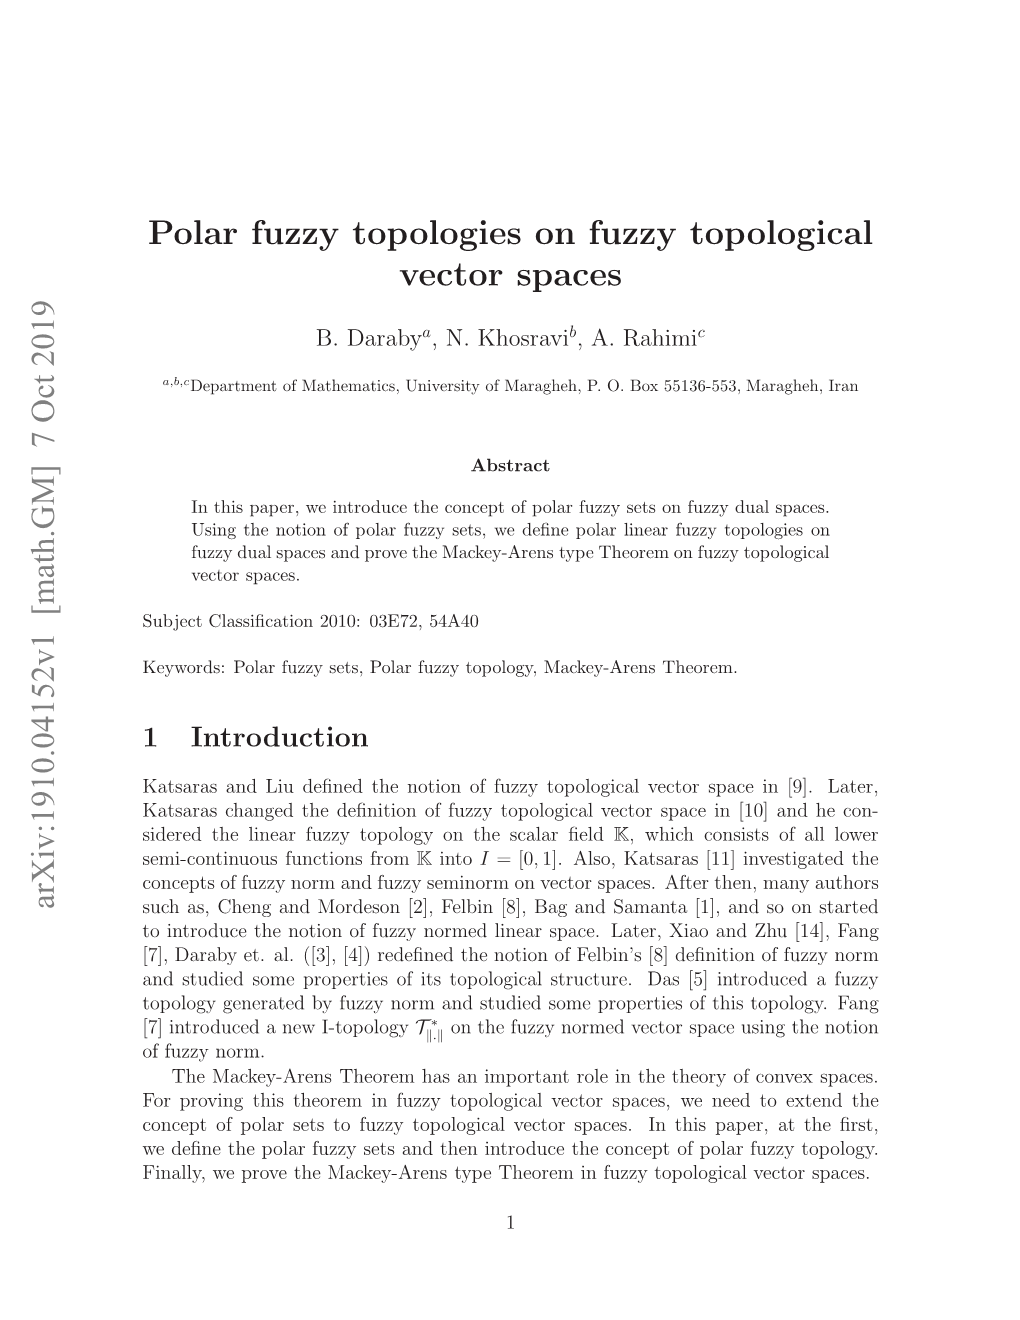 7 Oct 2019 Polar Fuzzy Topologies on Fuzzy Topological Vector Spaces